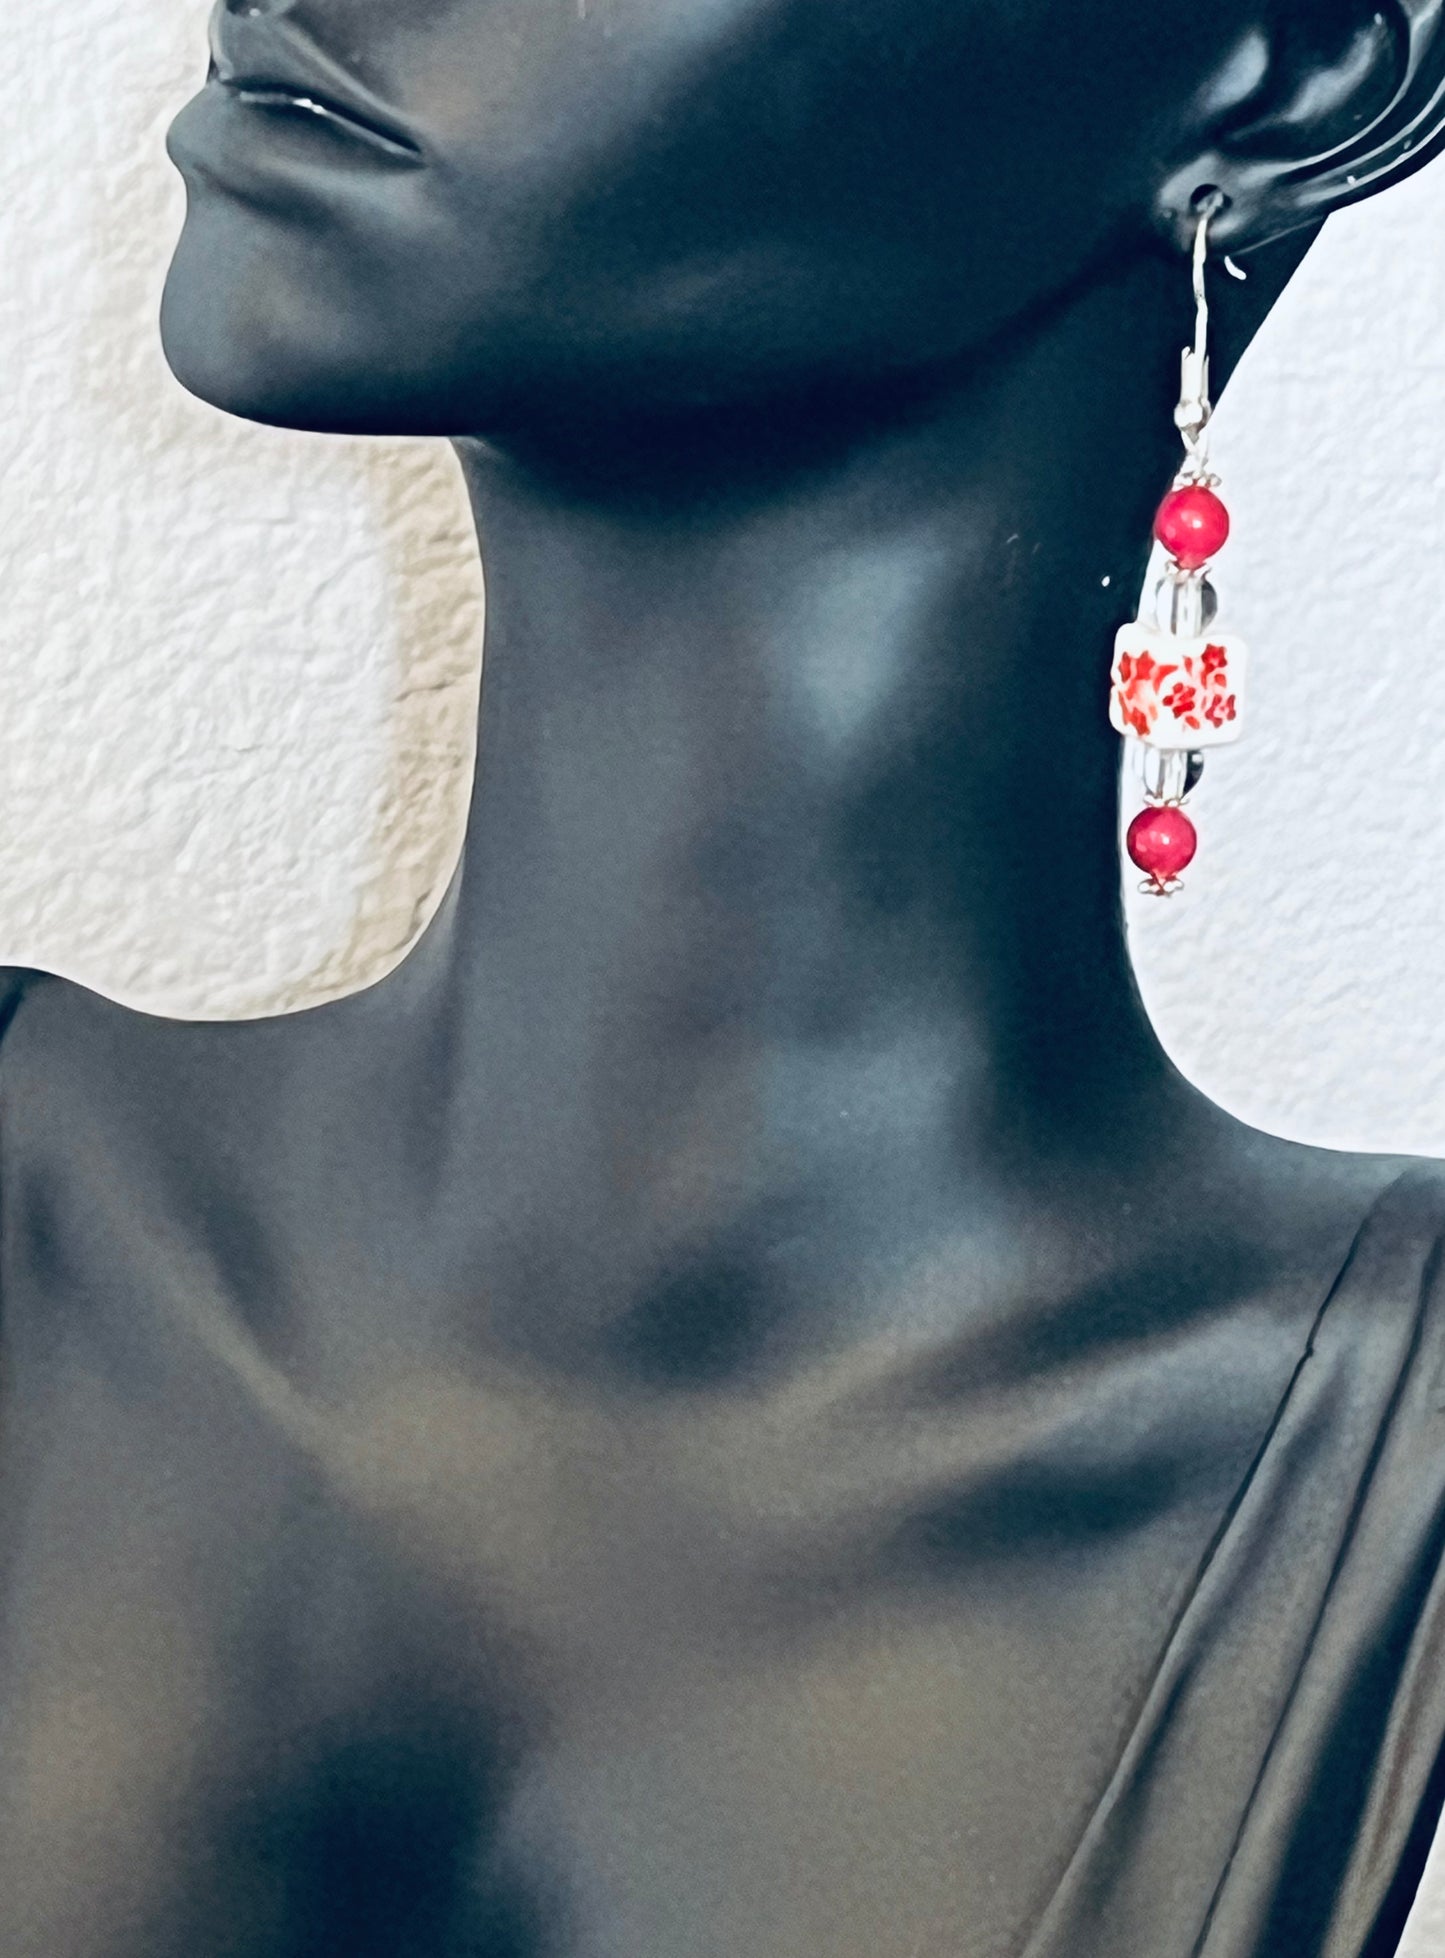 Red Cherry Blossom Earrings